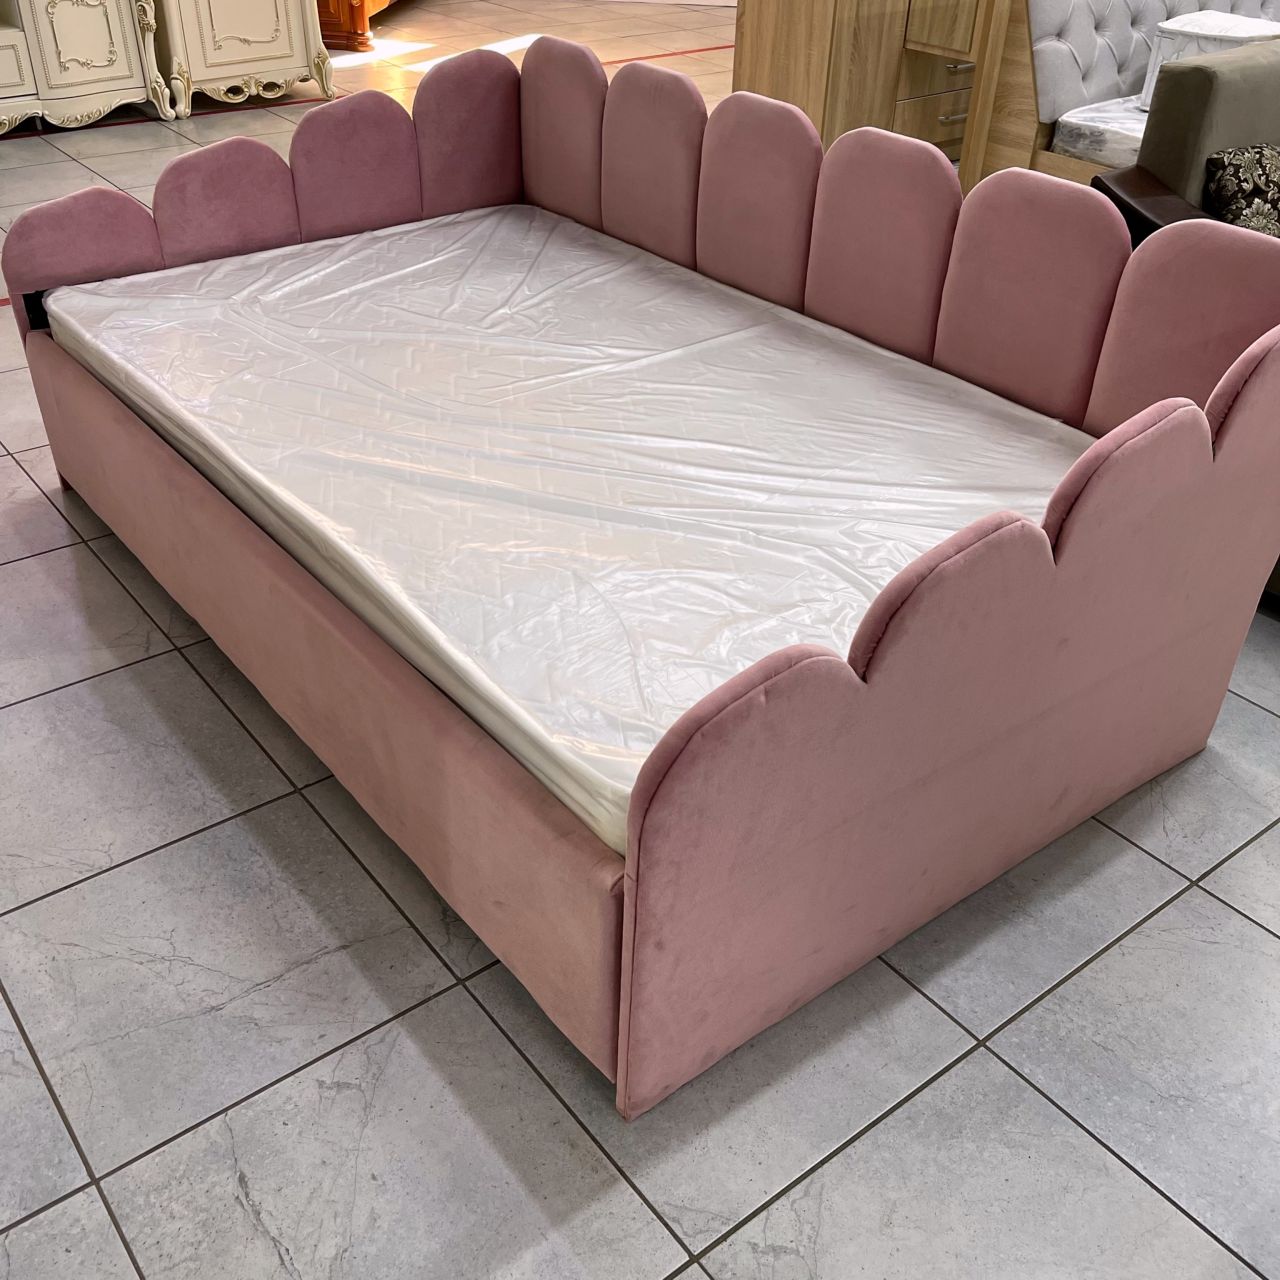 Кровать полуторка Барби